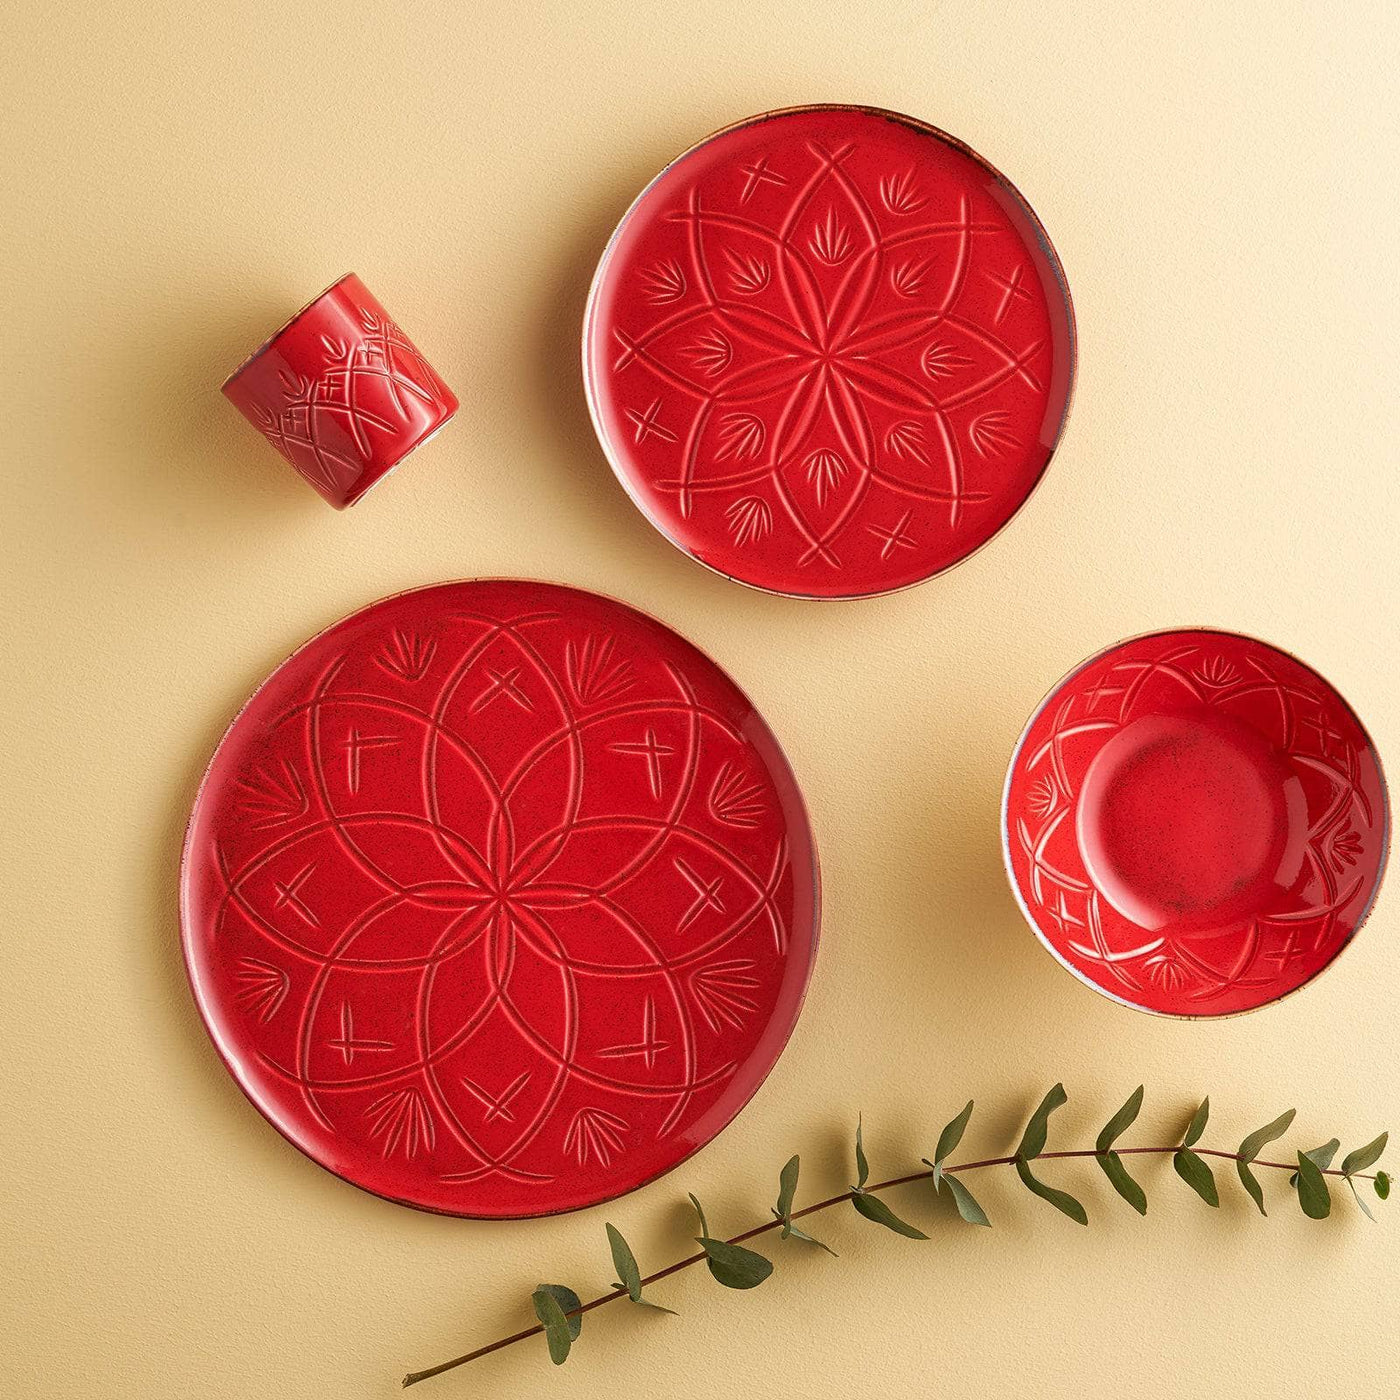 Christina Set of 6 Dinner Plates, Red, 27 cm Plates sazy.com